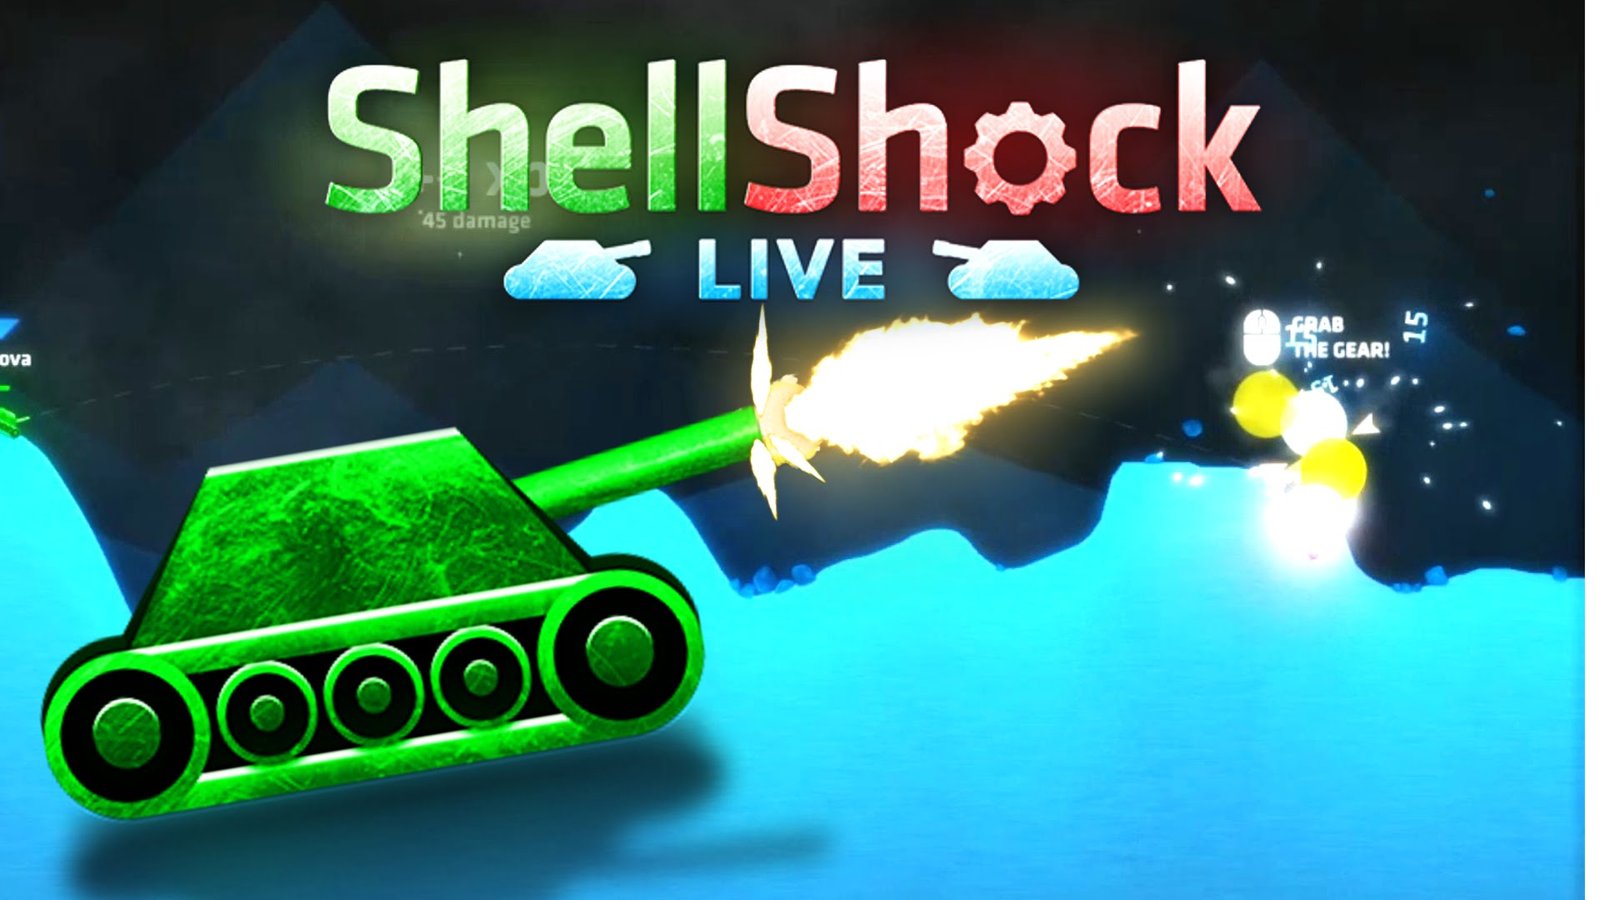 shellshock live weapons wiki